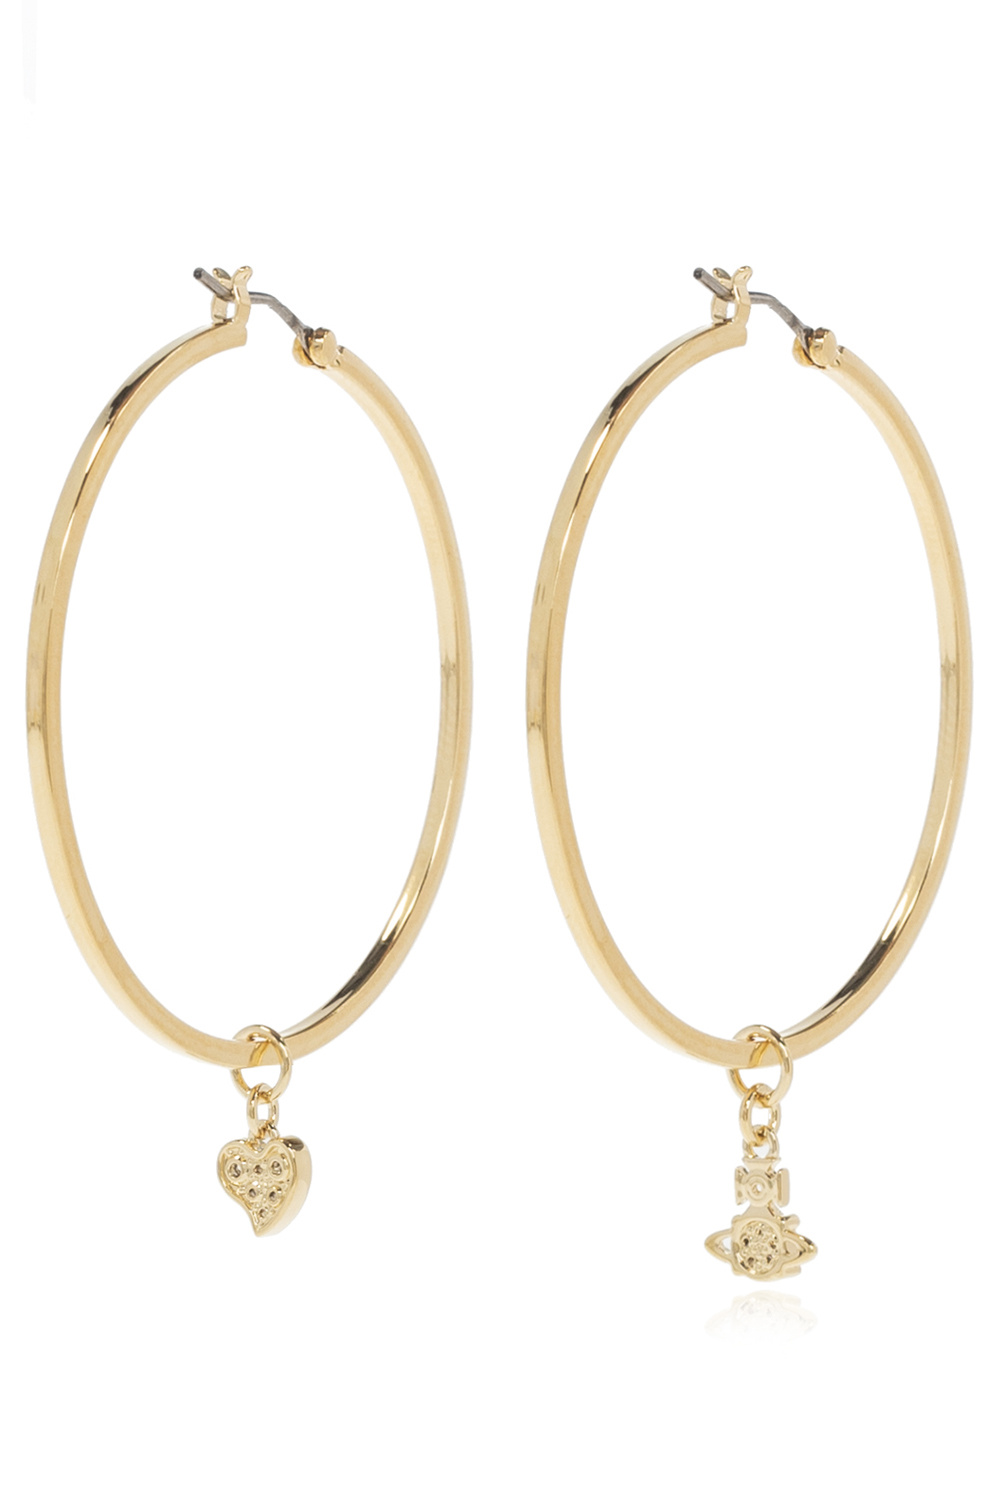 Vivienne Westwood ‘Brandita Large Hoop’ earrings | Women's Jewelery ...